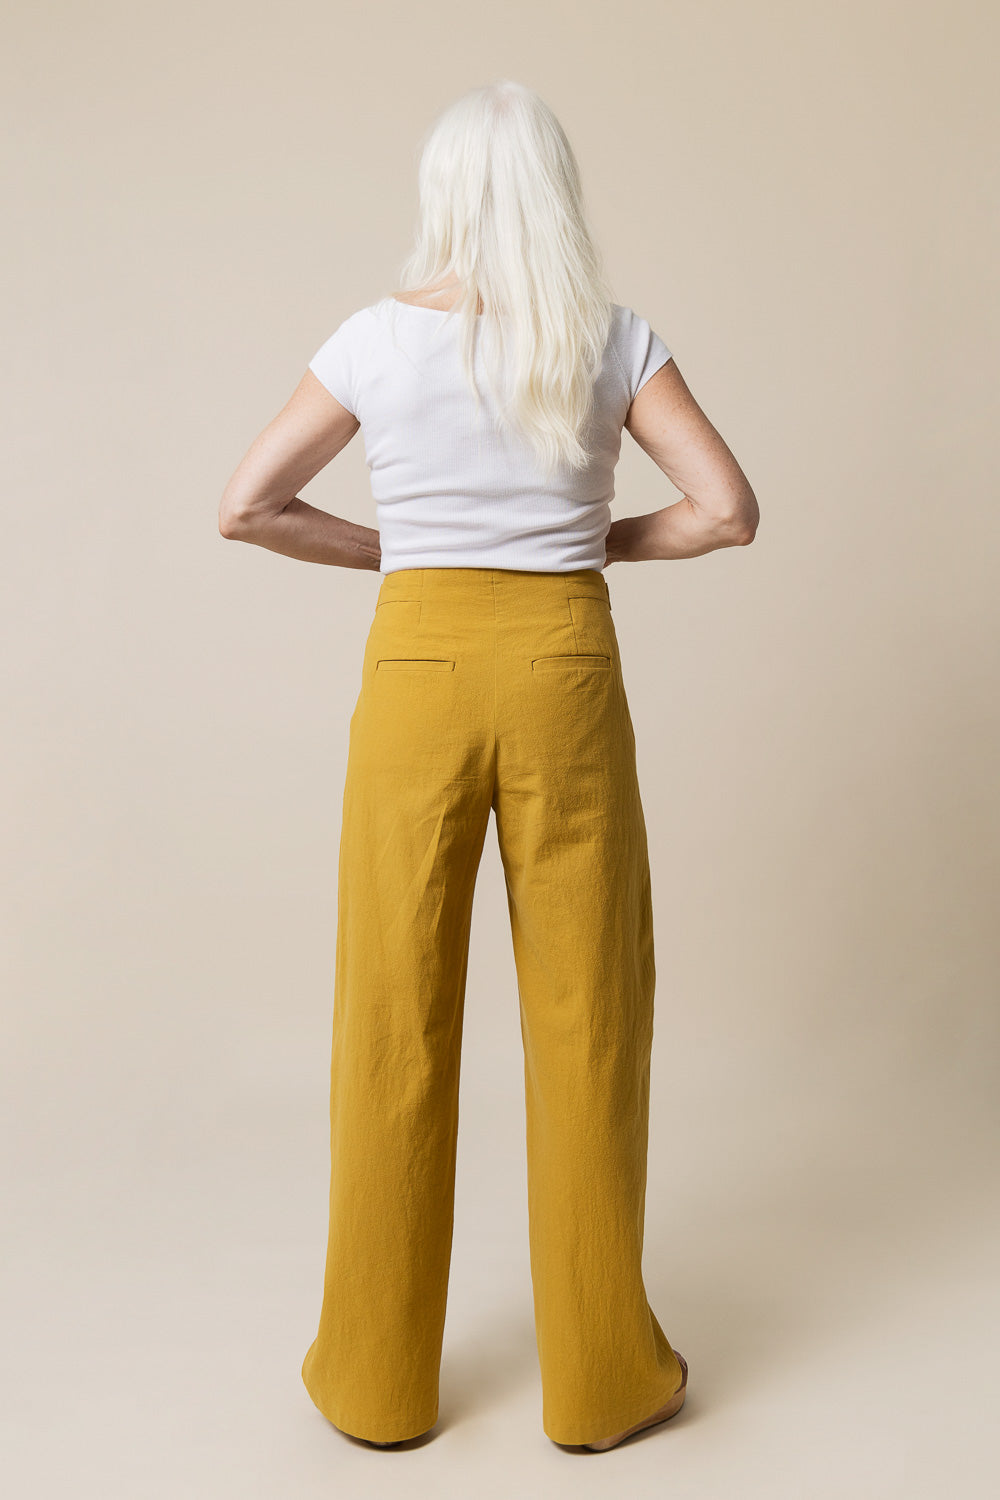 Mitchell Trousers Sizes 0-20 - Closet Core Patterns